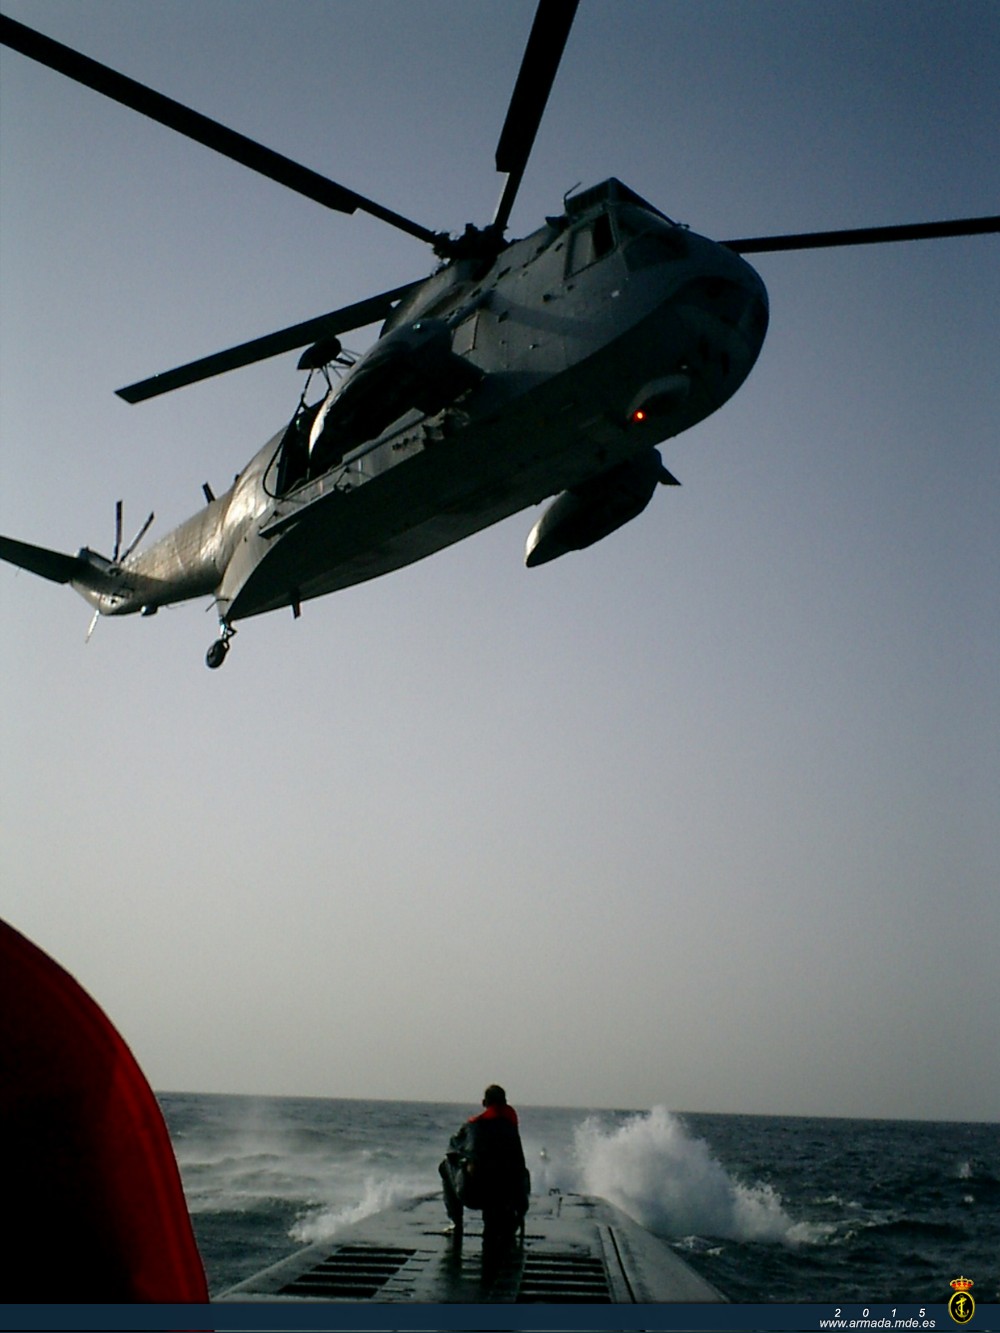  VOD en cubierta.- Transferencia de material desde un helicóptero en la cubierta de popa de un 70.